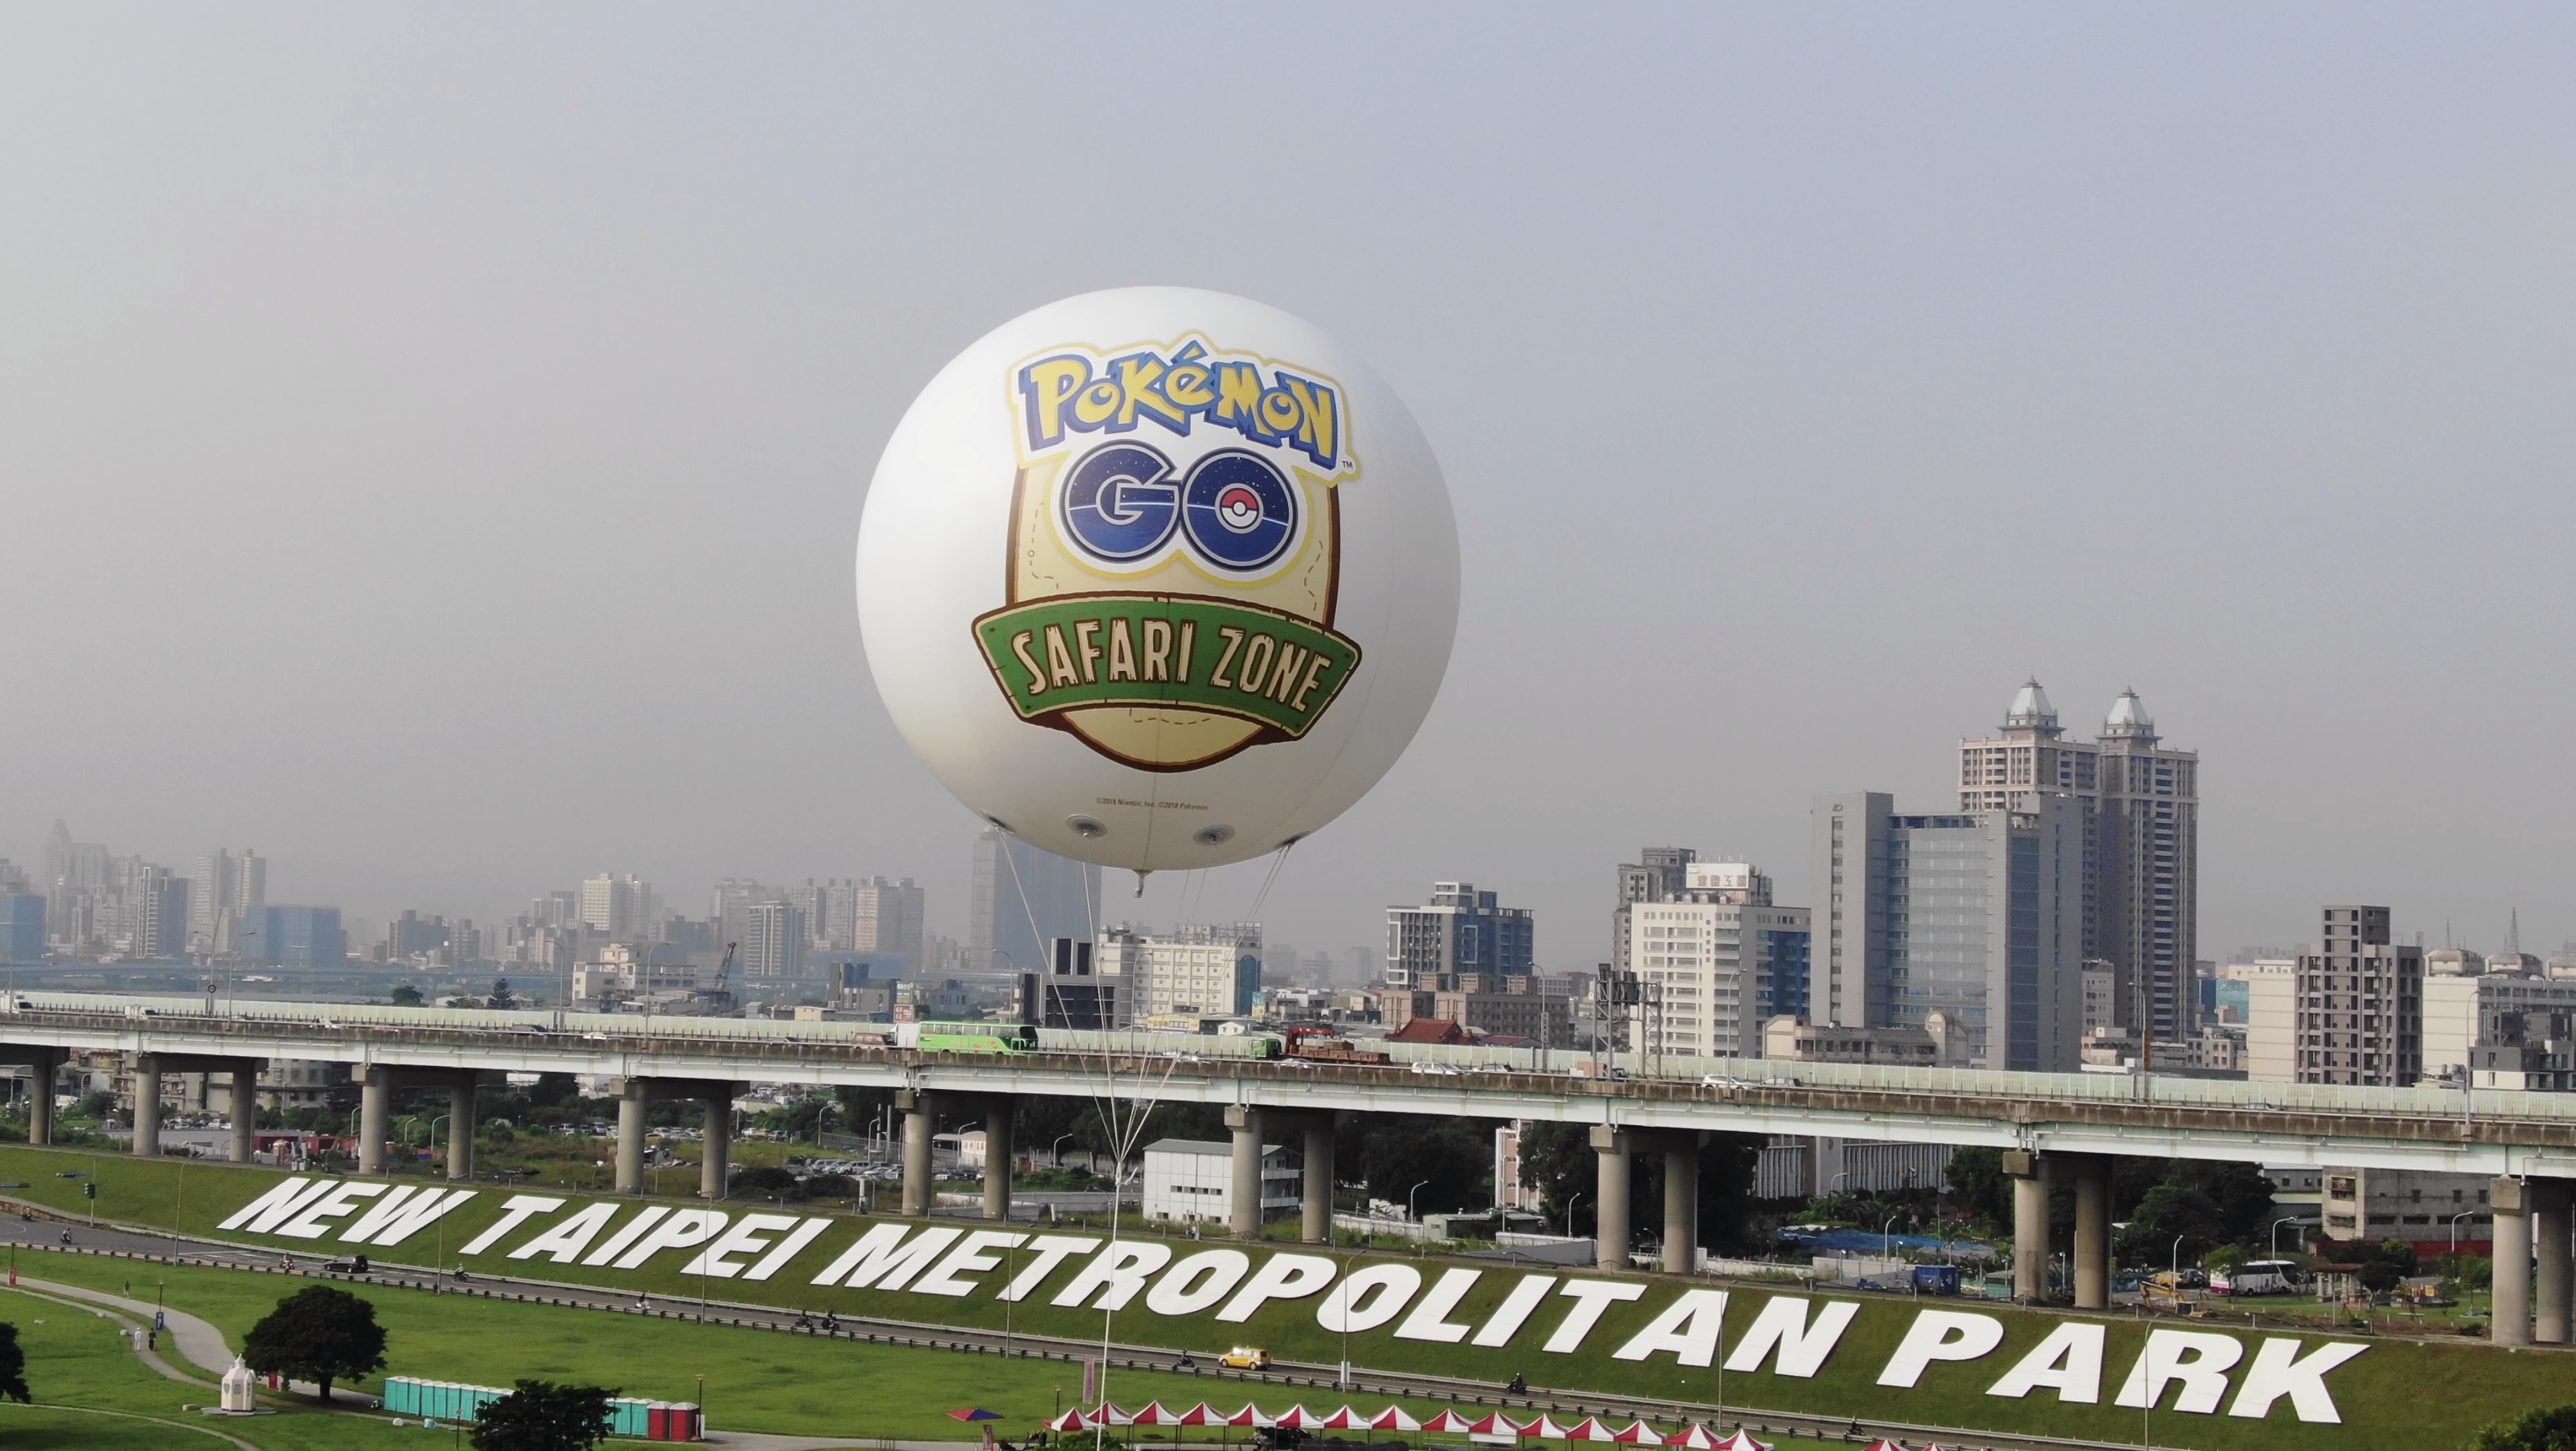 [官方活動]Pokemon GO Safari Zone in New Taipei City閉幕